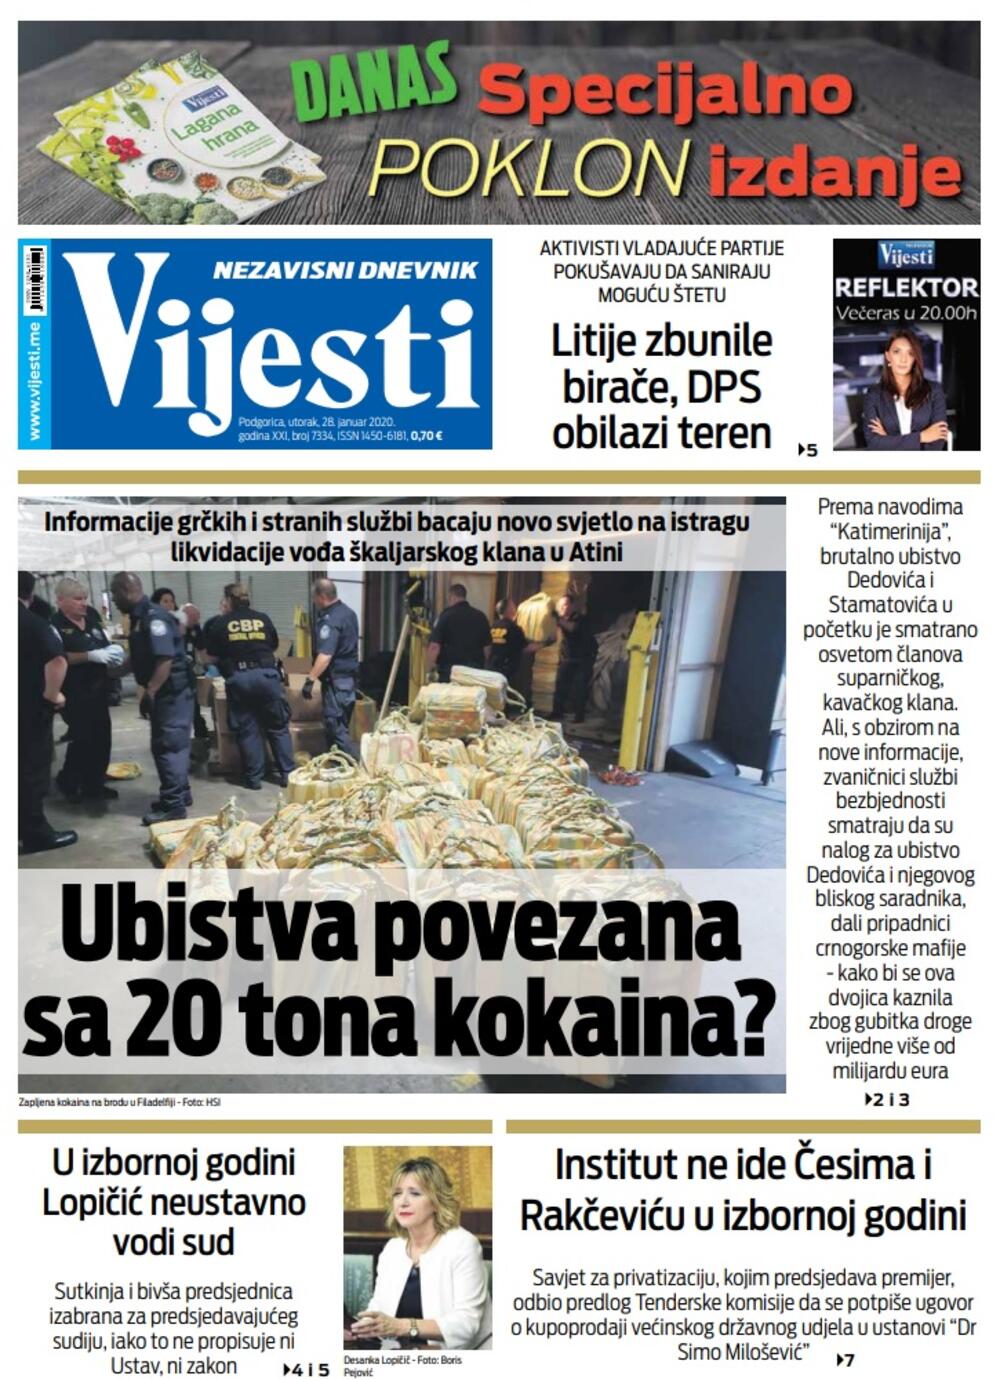 Naslovna strana "Vijesti" za 28. januar 2020. godine, Foto: "Vijesti"